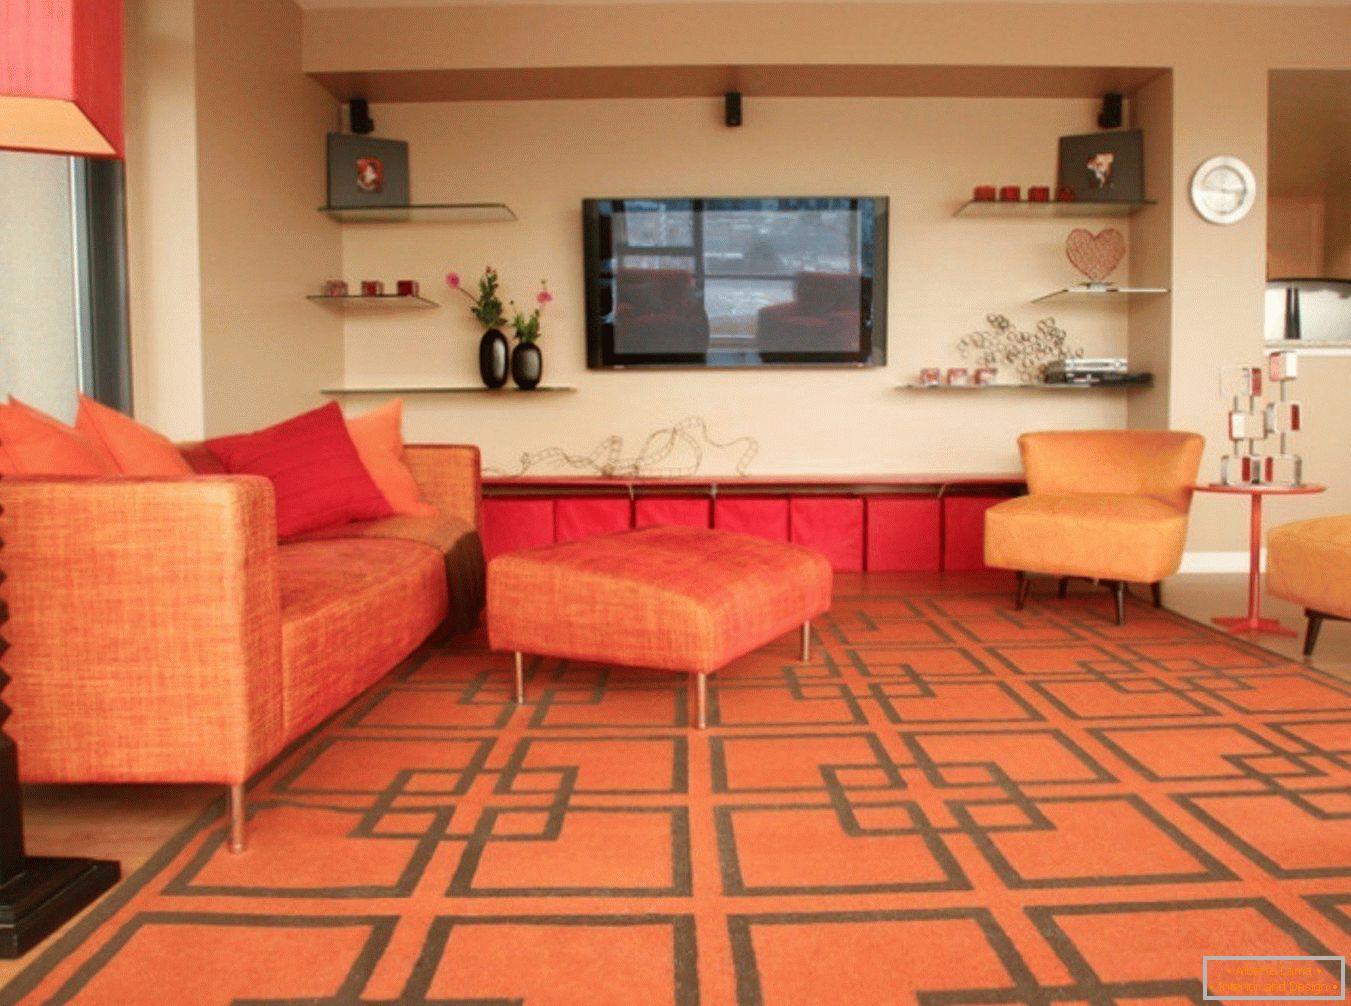 Carpete laranja e móveis